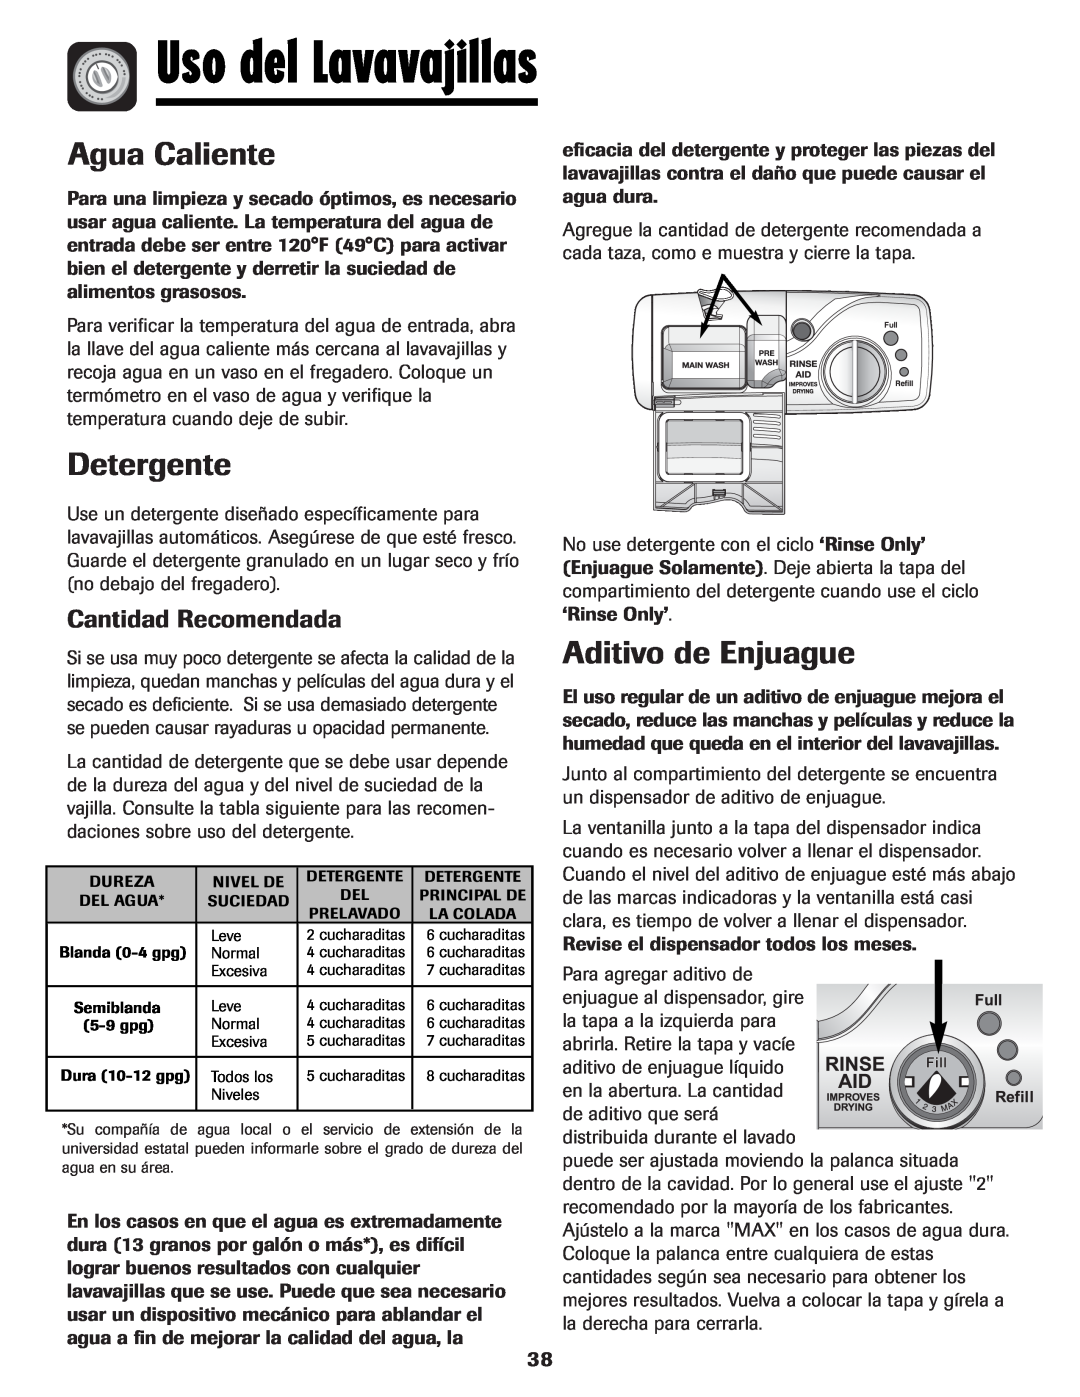 Maytag MDB-5 warranty Uso del Lavavajillas, Agua Caliente, Detergente, Aditivo de Enjuague, Cantidad Recomendada 